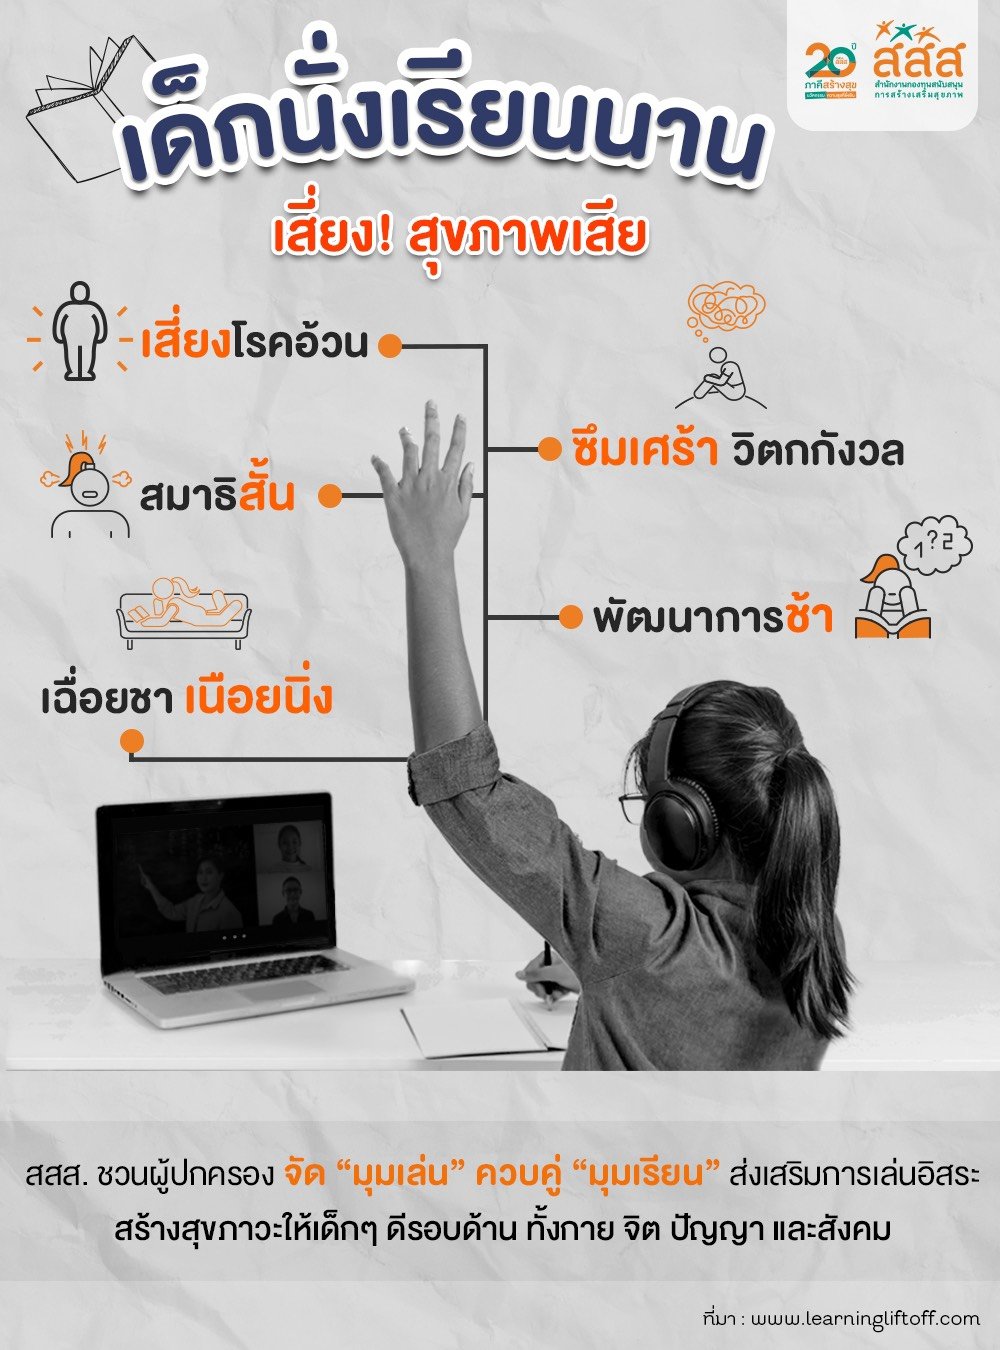 สสส. แนะวิธีลดเครียด เด็กเรียนออนไลน์ช่วงโควิด-19 thaihealth